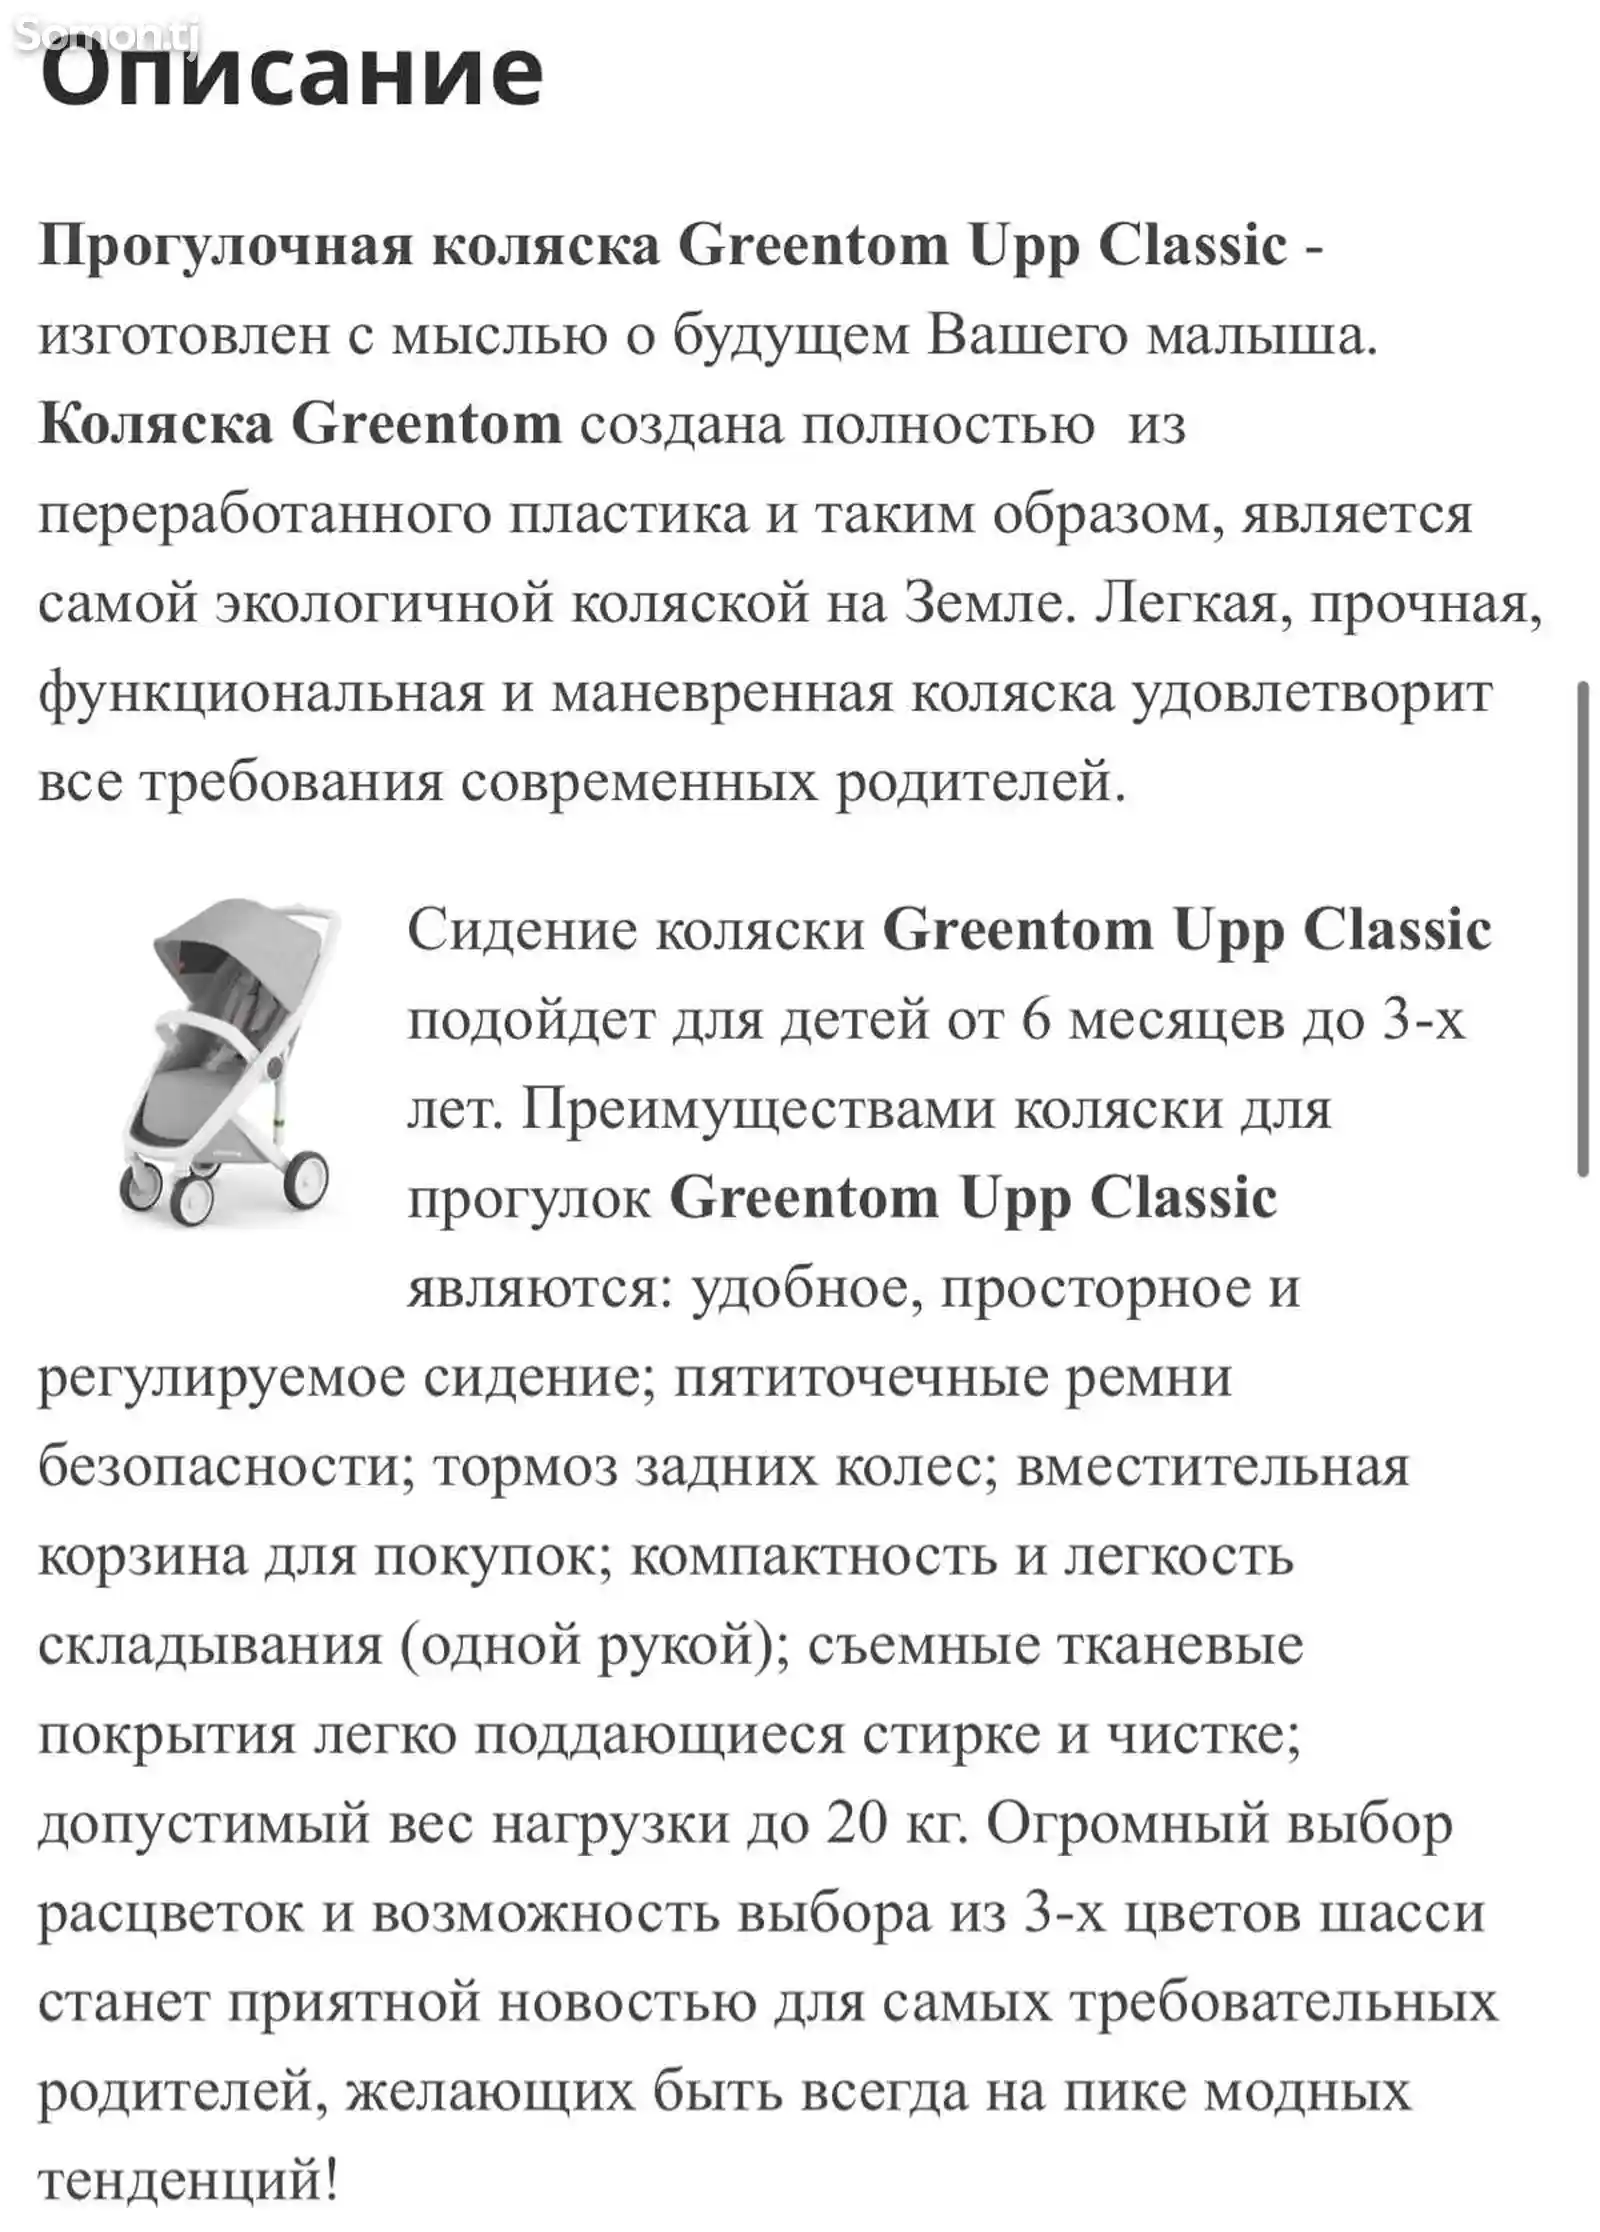 Коляска Greentom-10